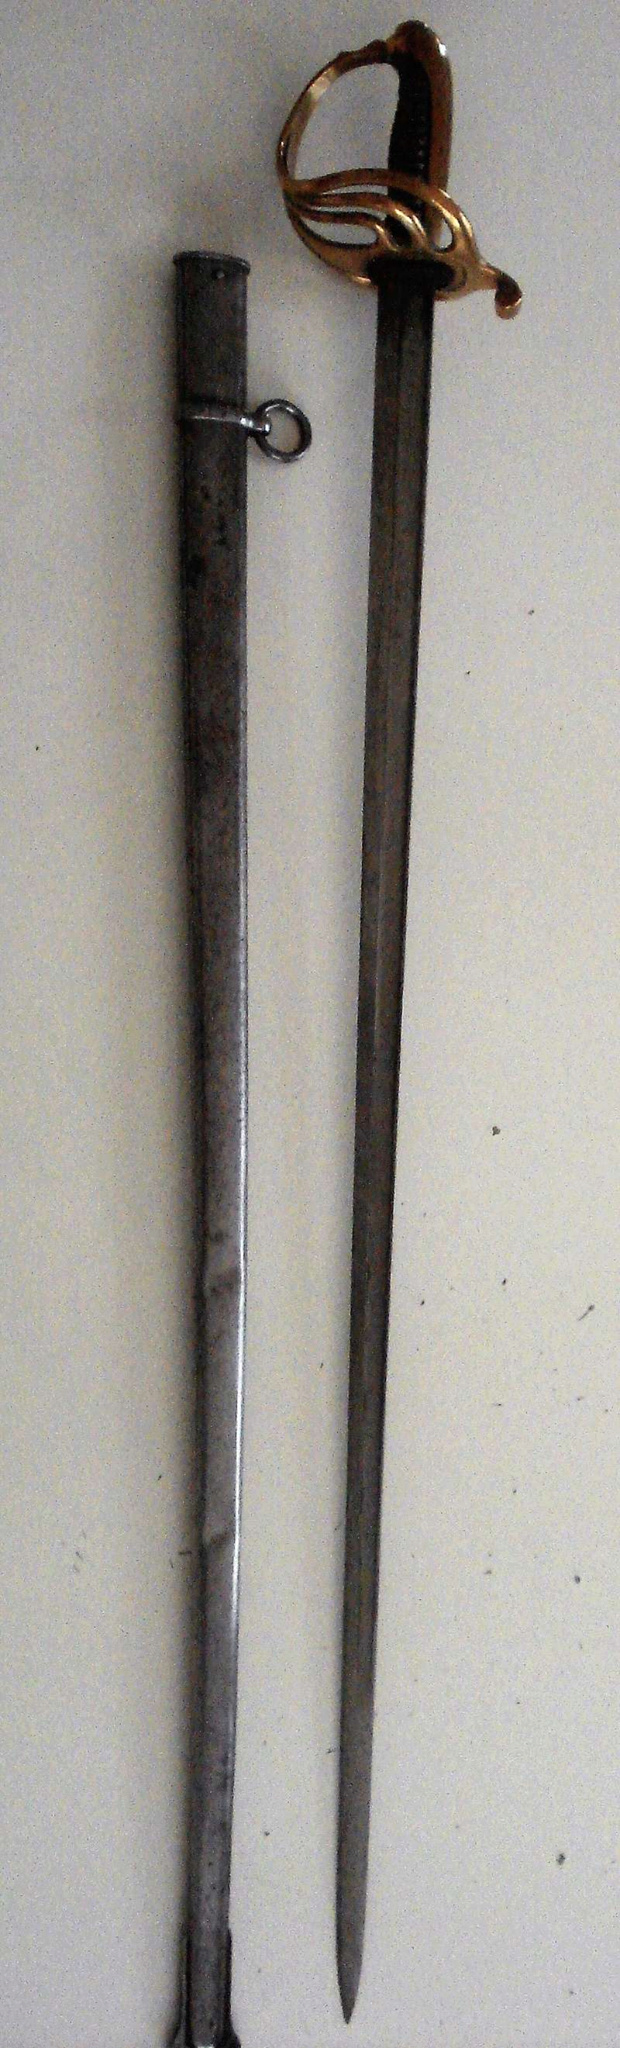 Curieux sabre de cavalerie modèle 1882 30849510